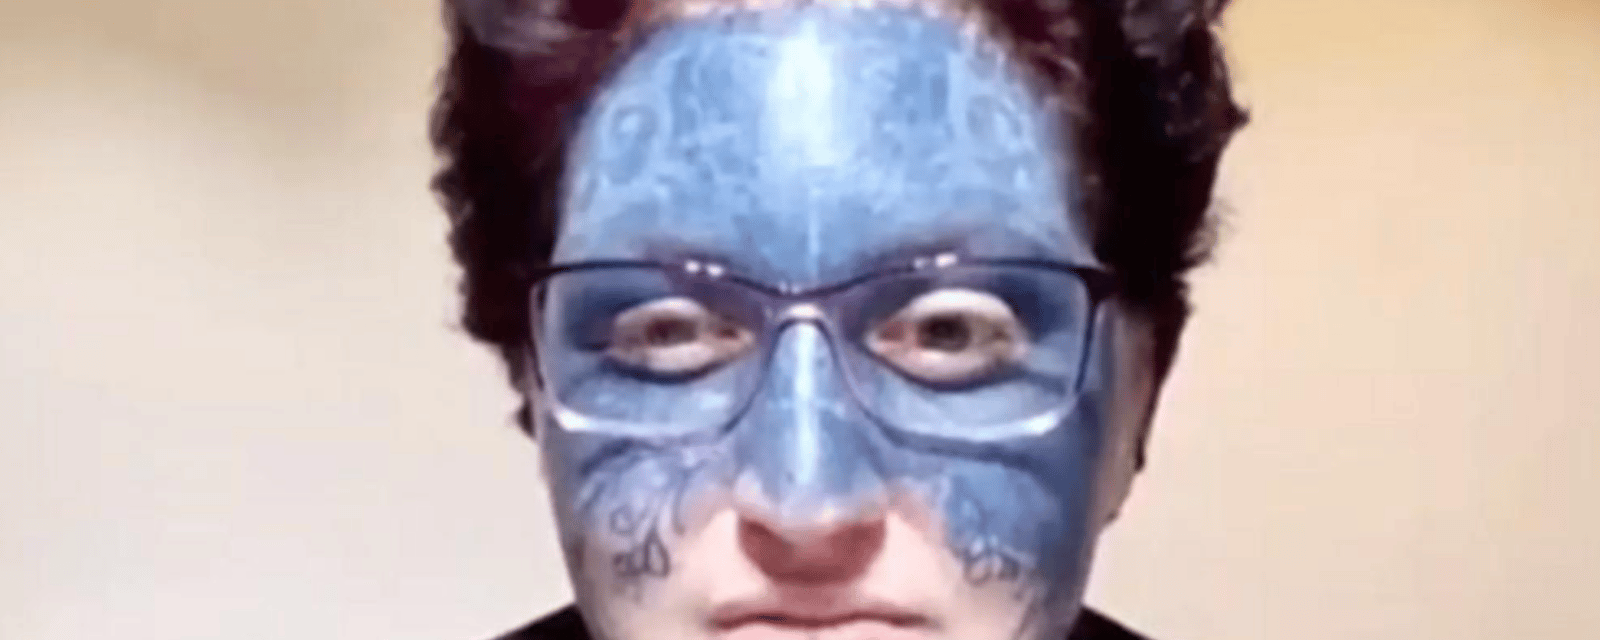 Une femme qui a été tatouée au visage contre son gré reçoit une aide inespérée.